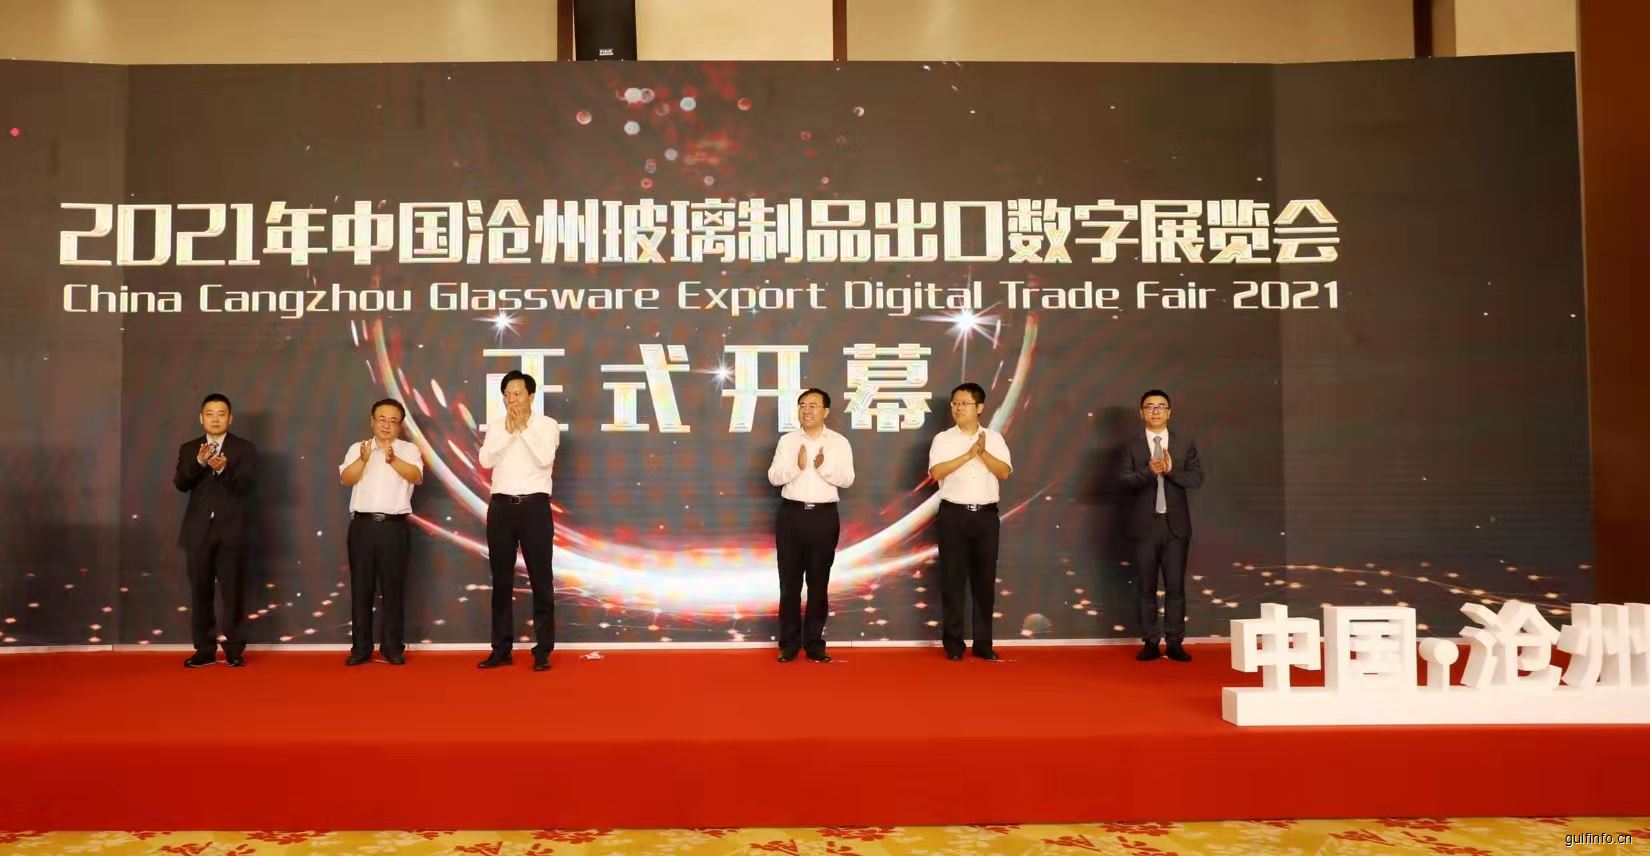 2021年<font color=#ff0000>中国</font>沧州玻璃制品出口数字展览会开幕